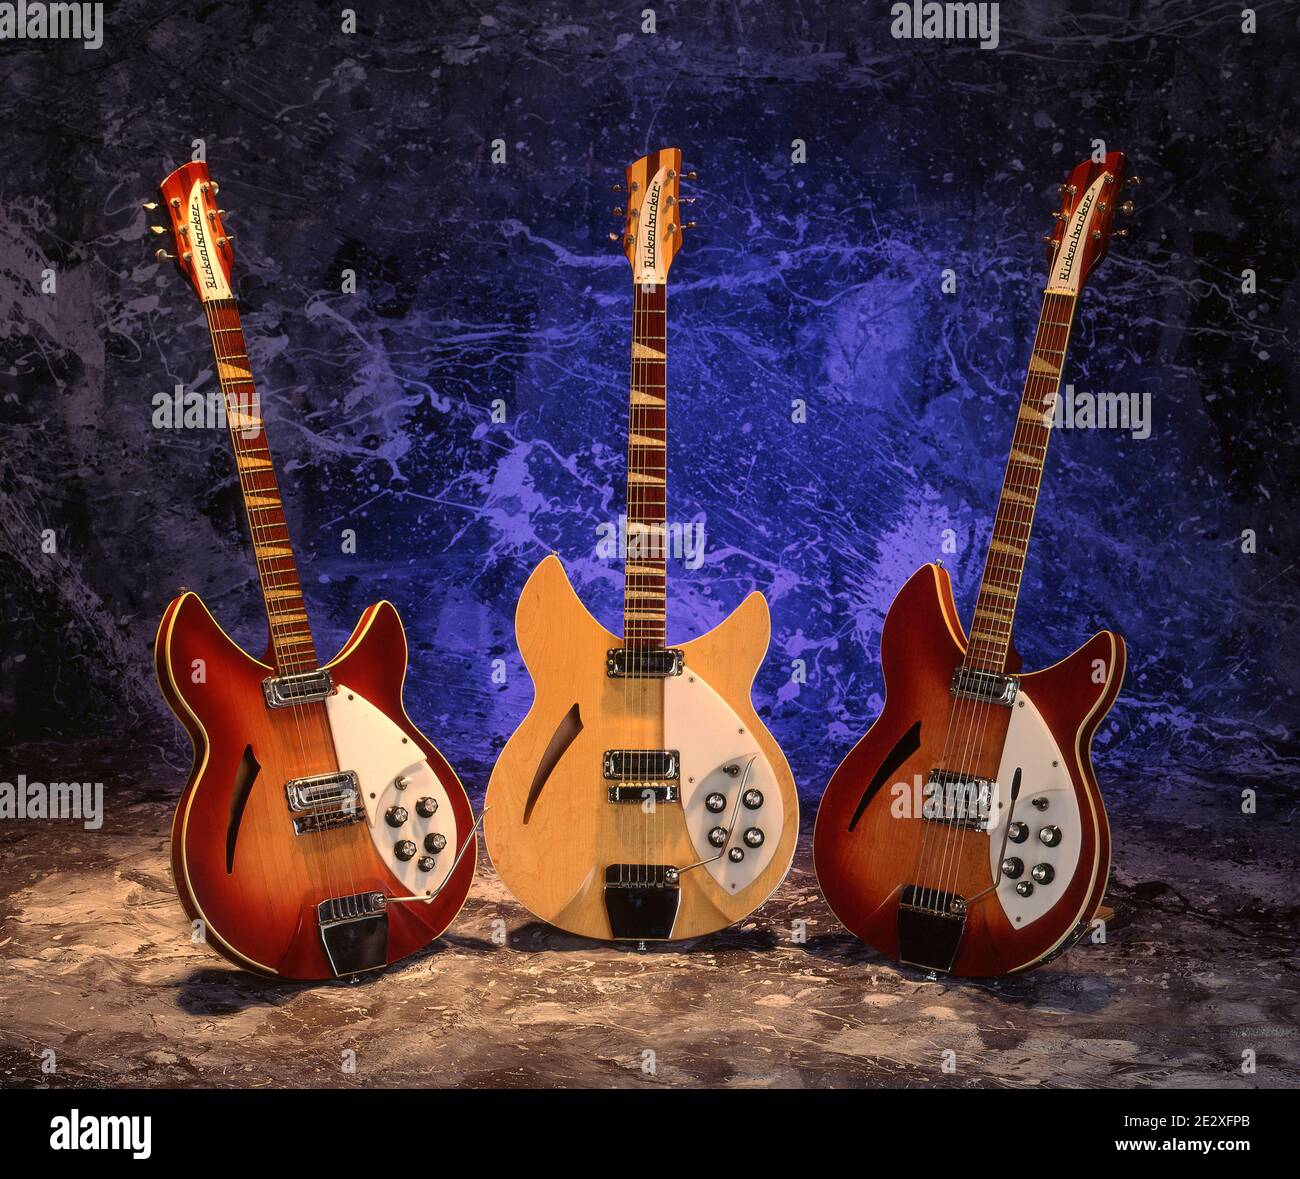 Three Rickenbacker Guitars, built by Rickenbacker Manufacturing Company in Santa Ana, California. Stock Photo